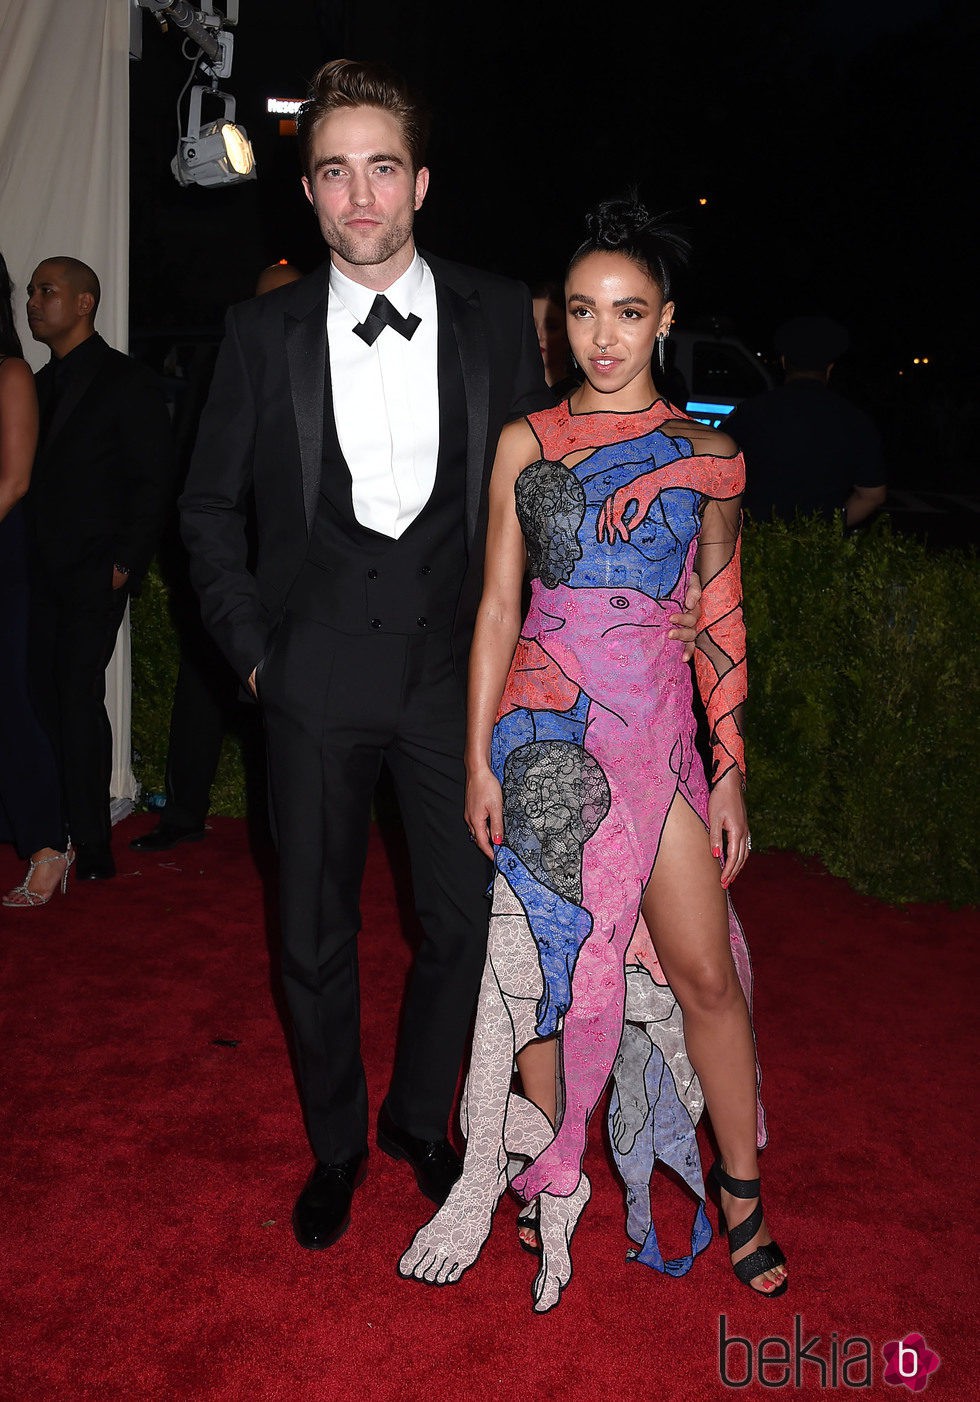 Robert Pattinson y su novia FKA en la gala MET 2015